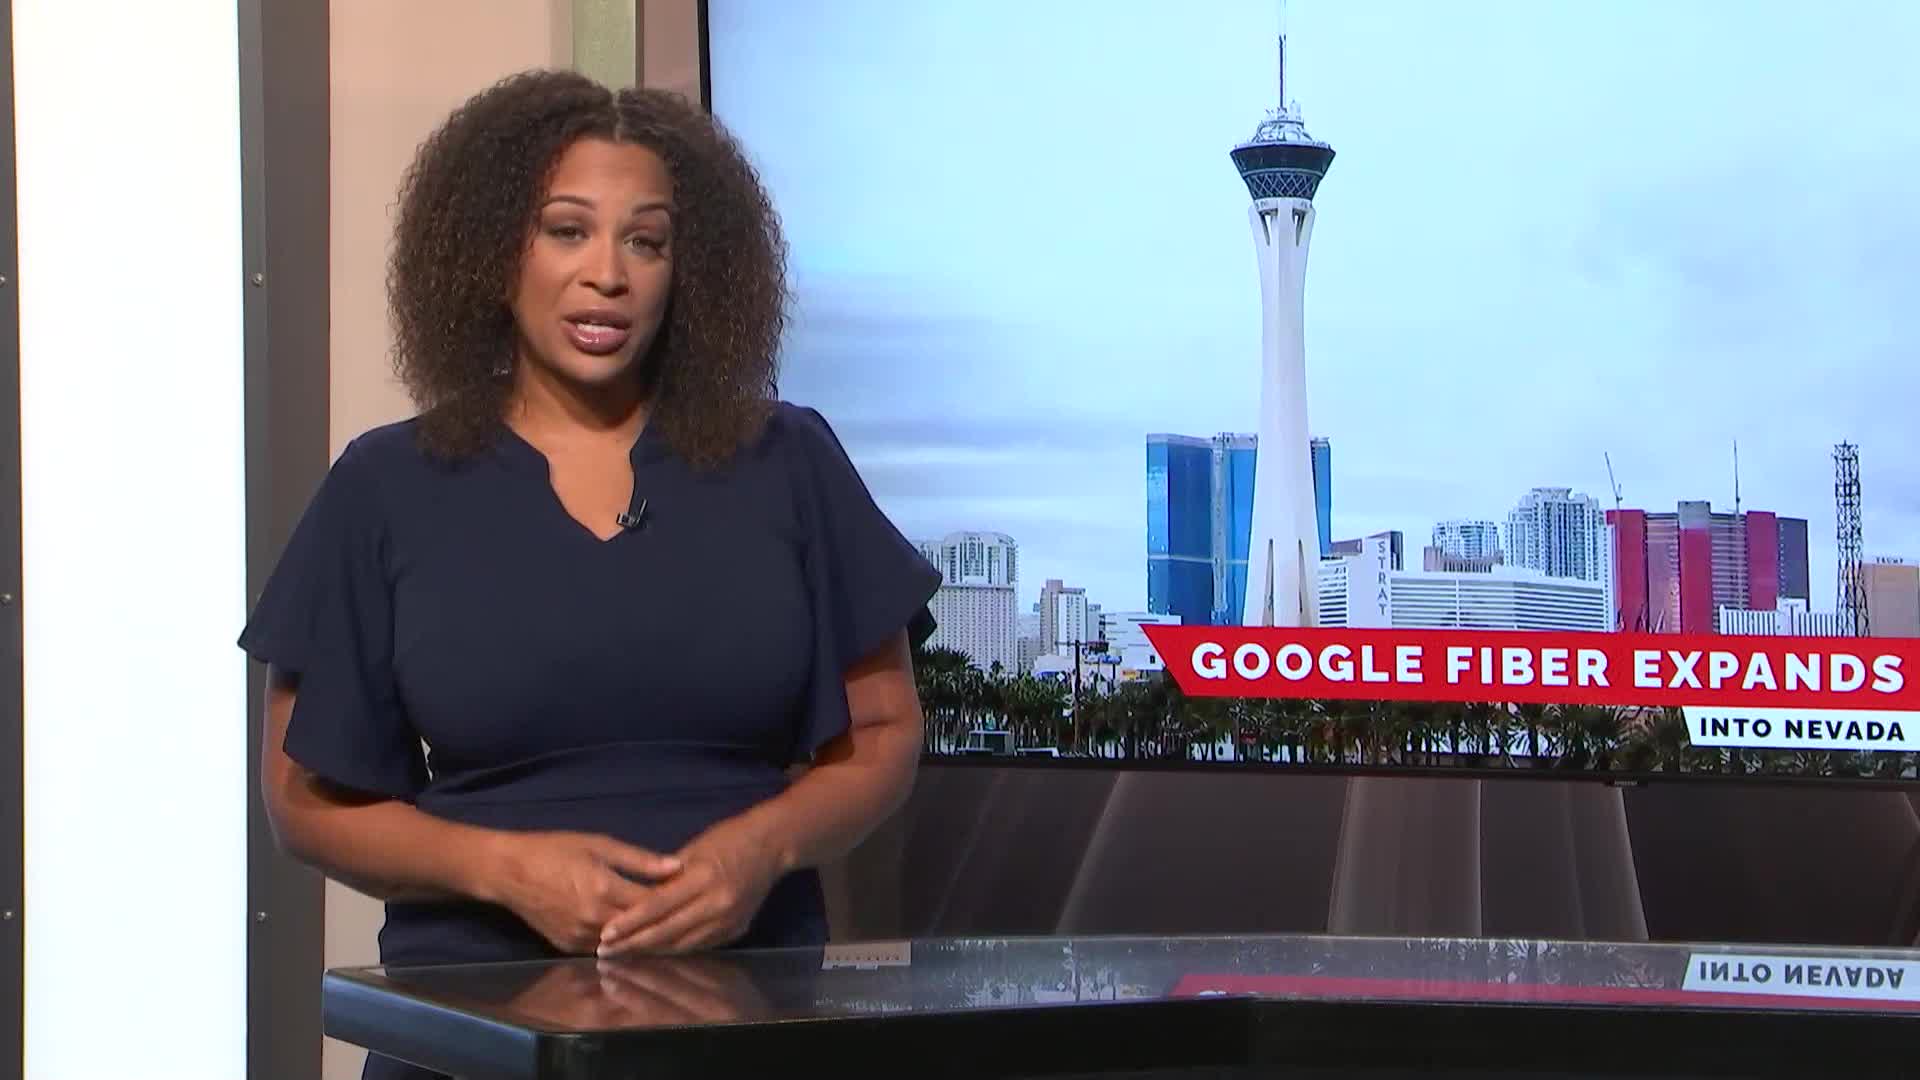 Google Fiber expanding into Nevada